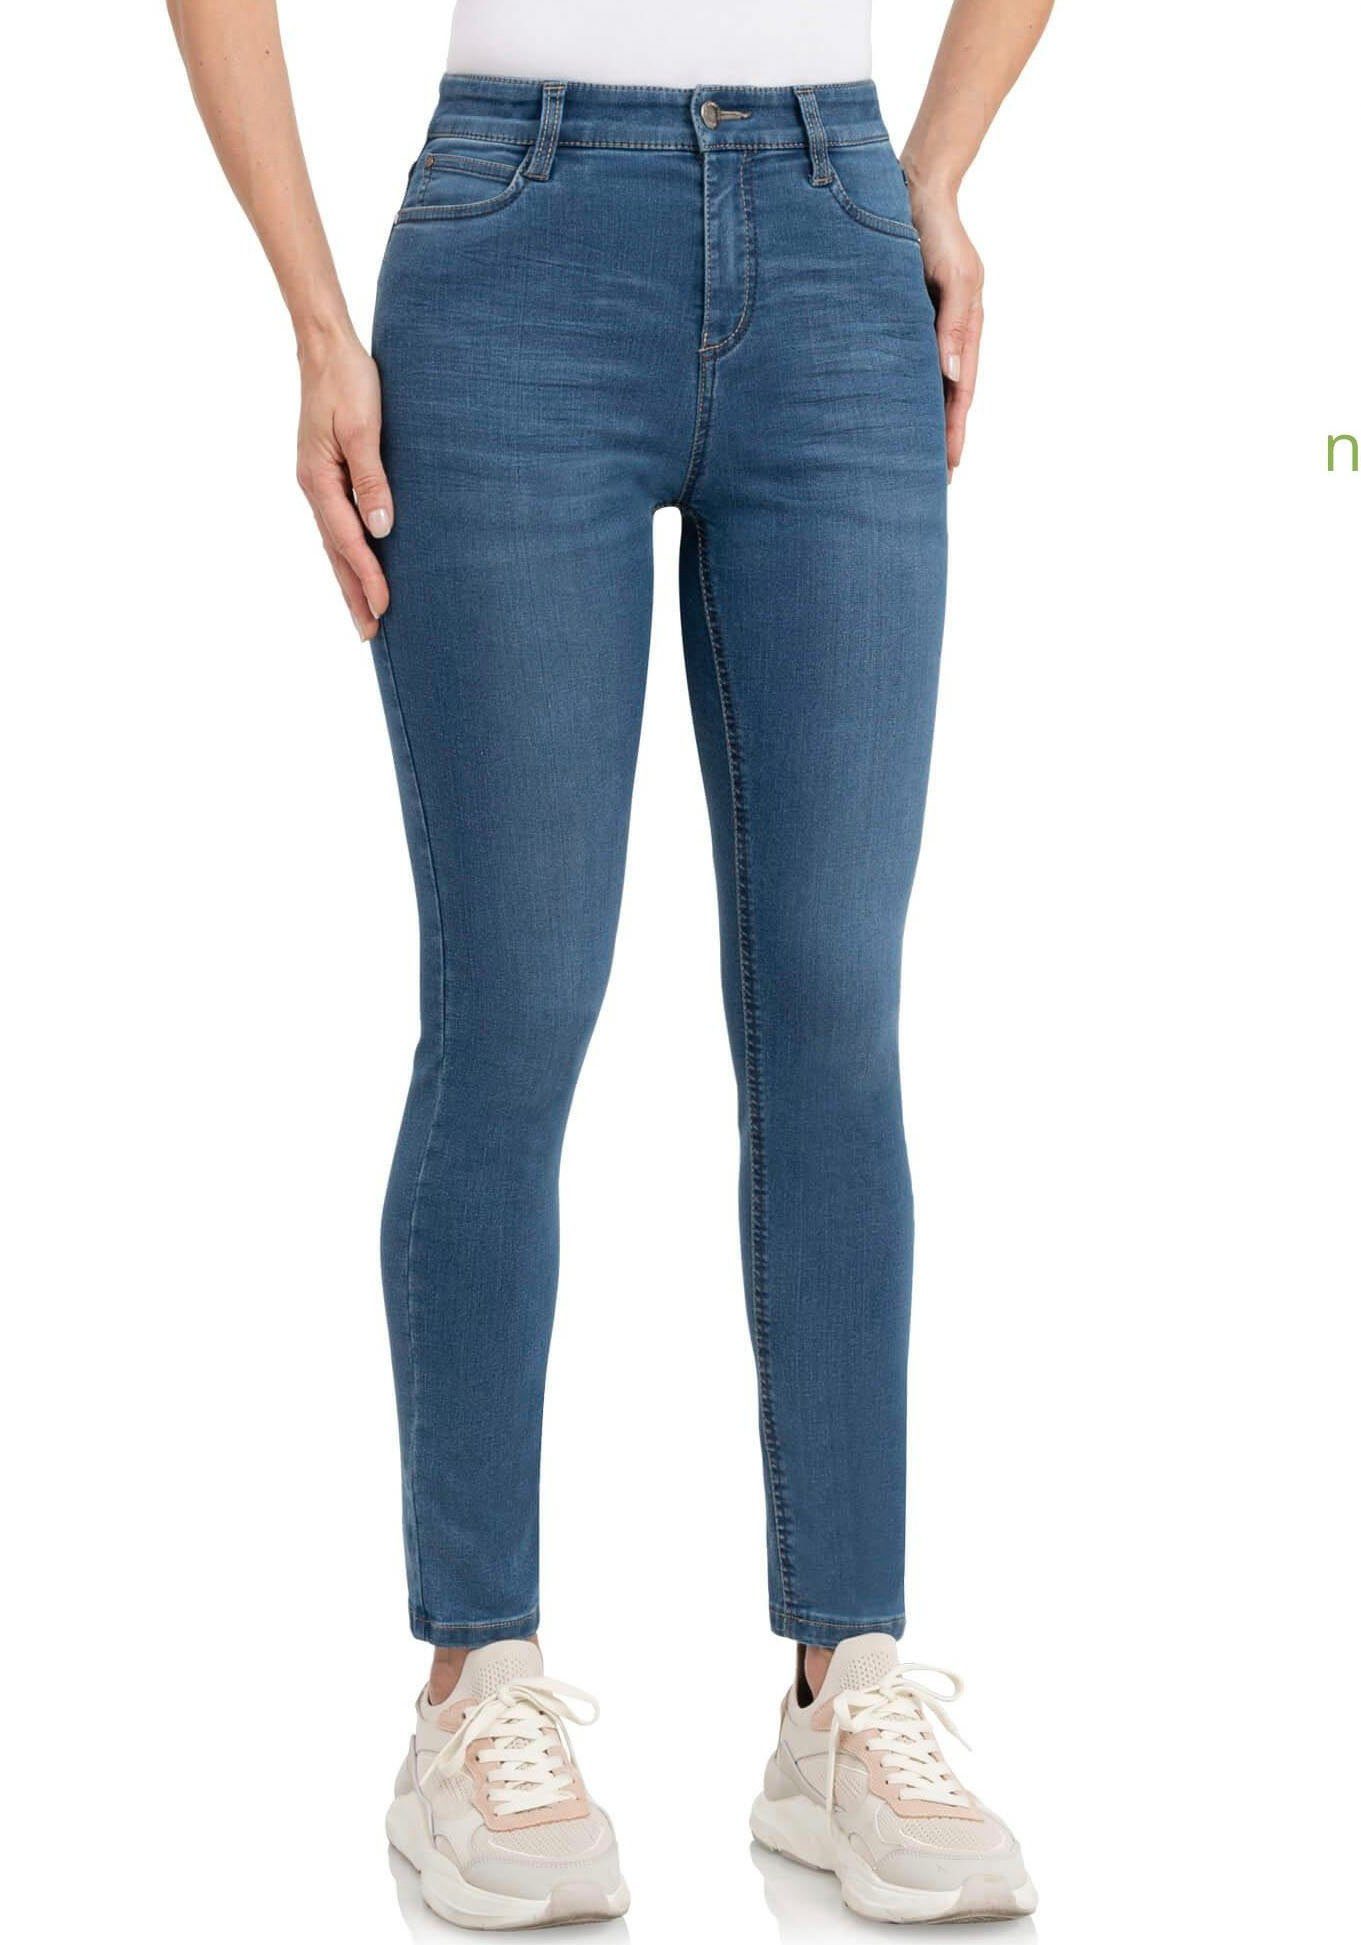 wonderjeans High-waist-Jeans High Waist verkürztem super Bein blue Hoch geschnitten mit WH72 leicht stonewash